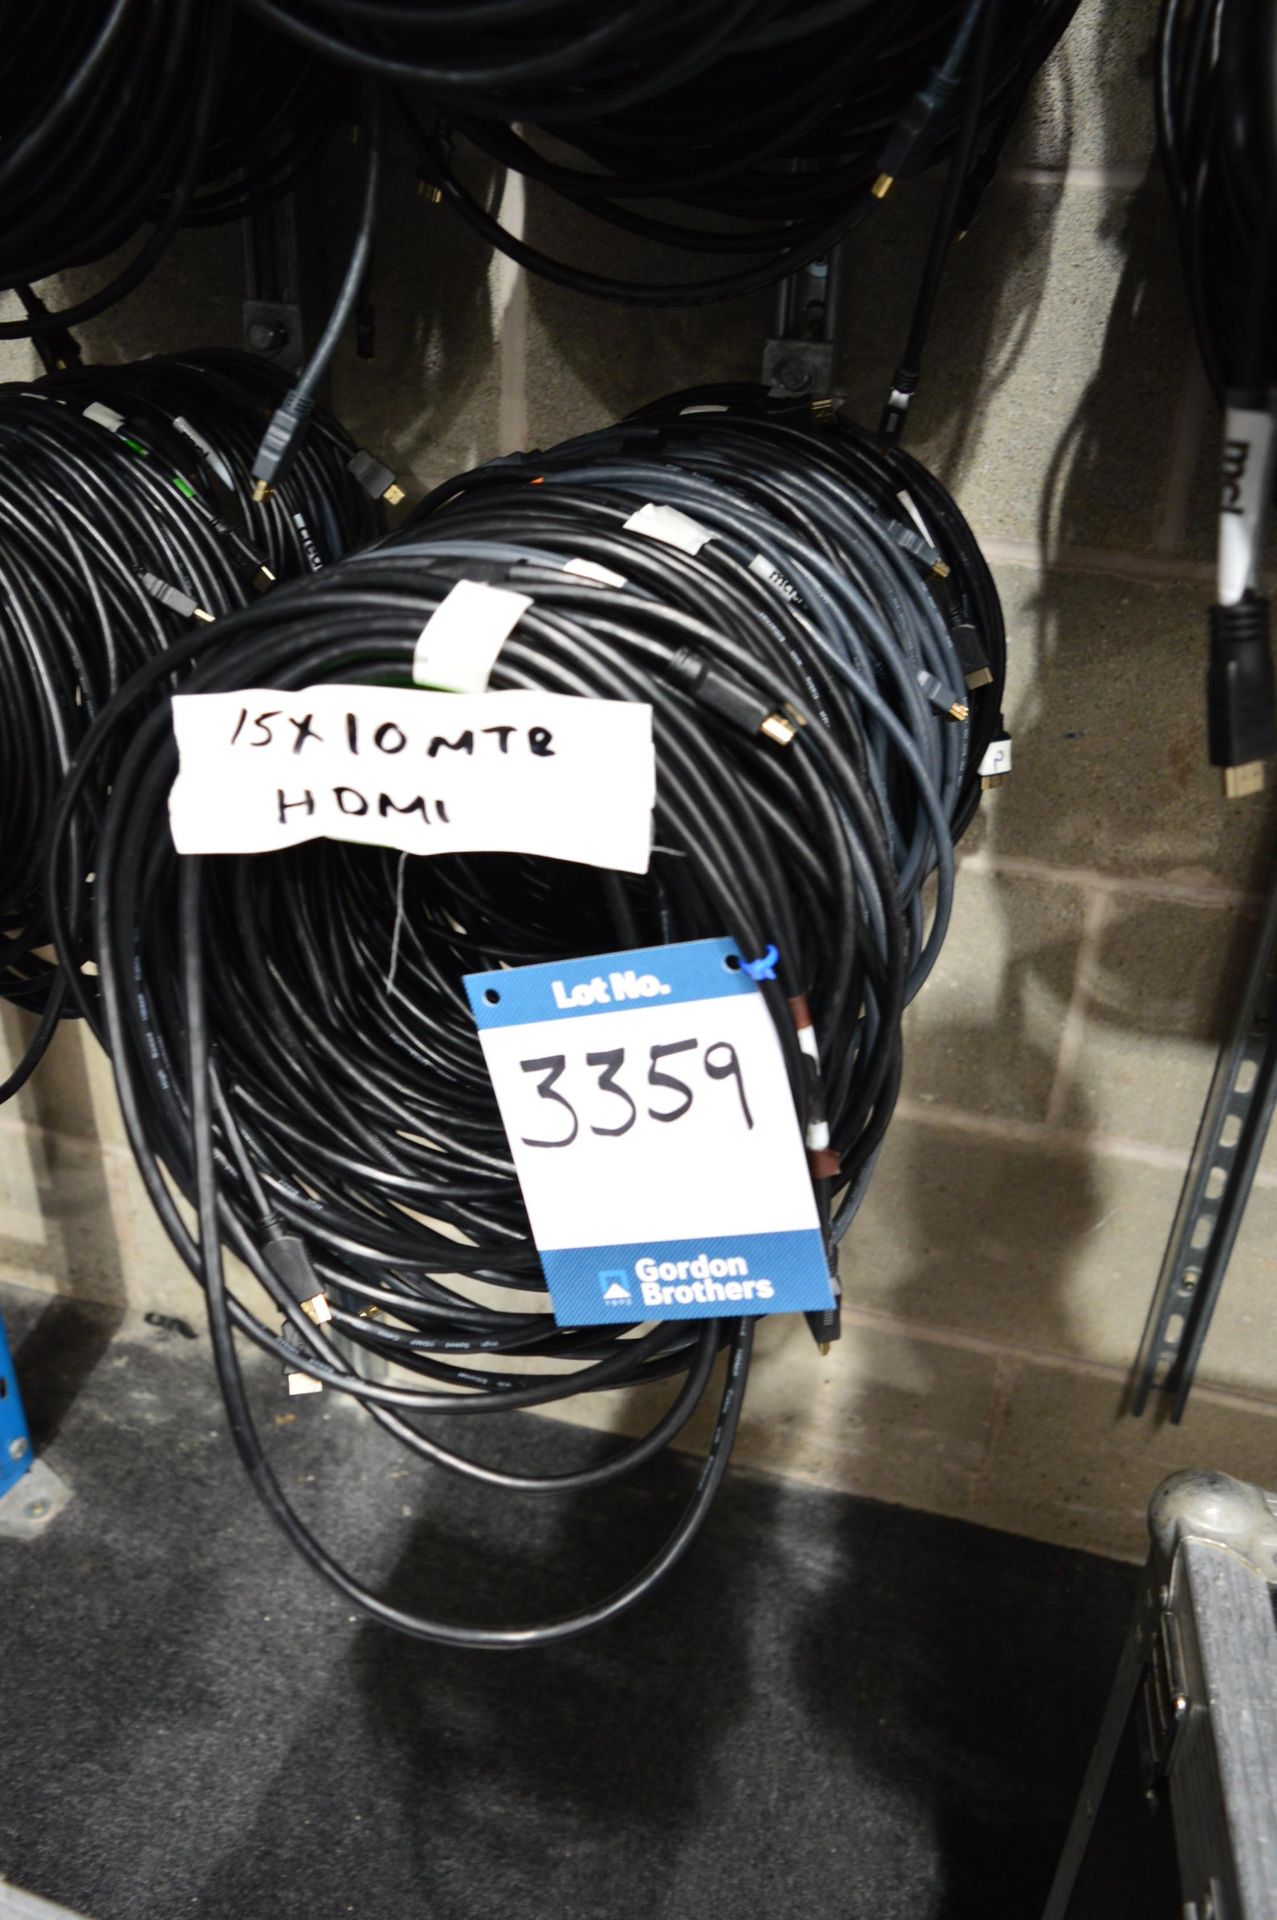 15x 10m HDMI cables: Unit 500, Eckersall Road, Birmingham B38 8SE